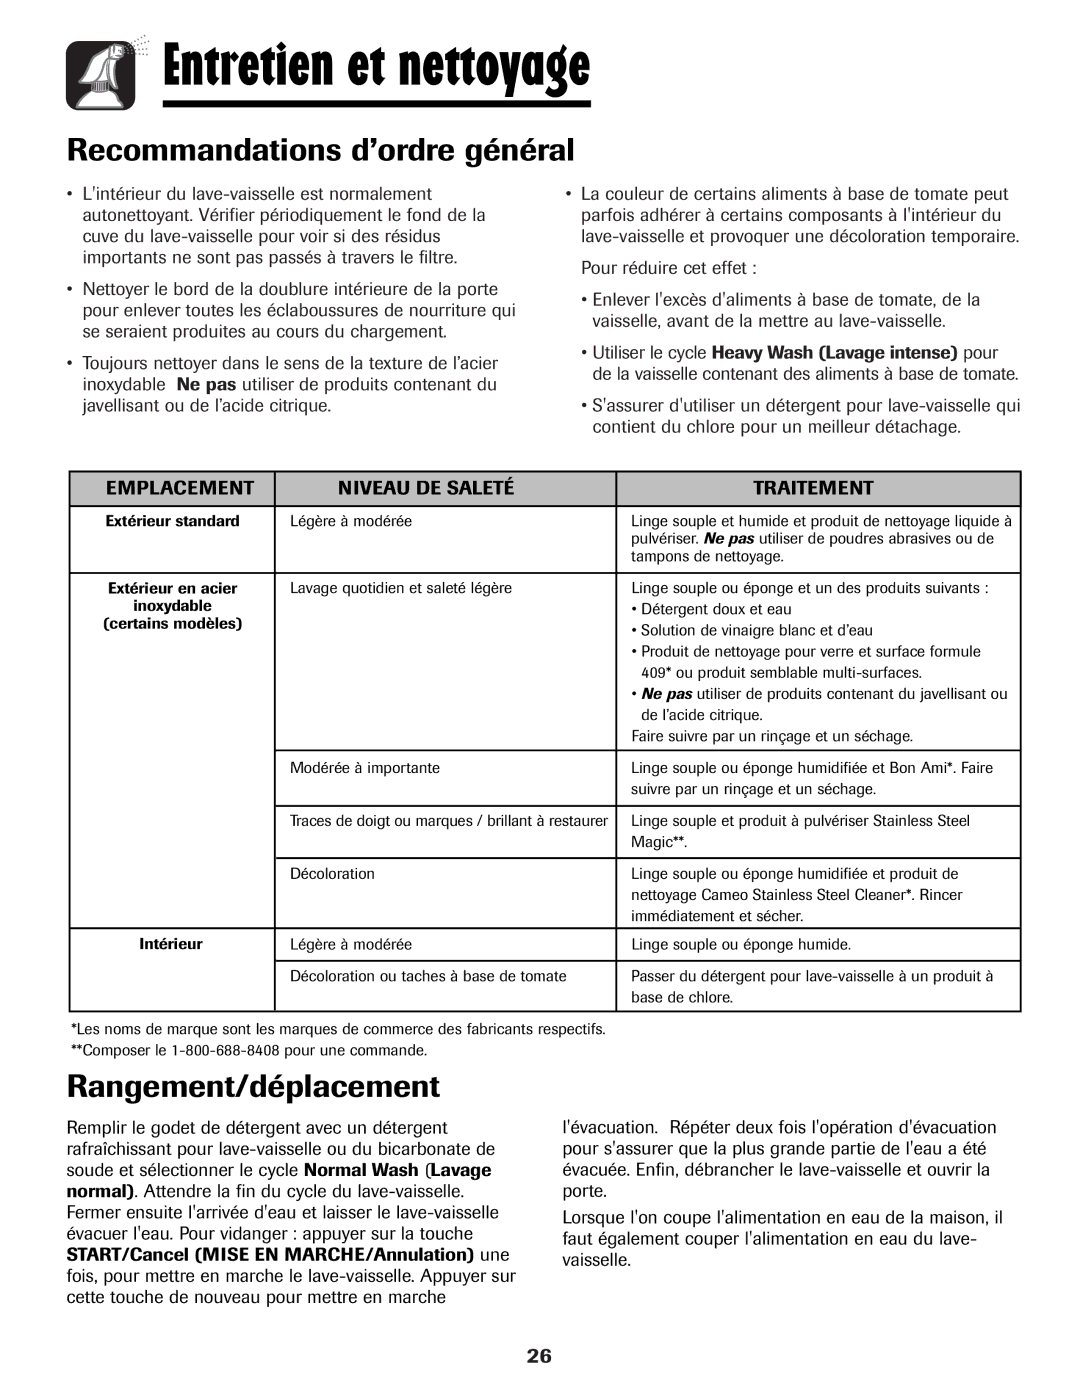 Amana ADB-1 warranty Entretien et nettoyage, Rangement/déplacement, Emplacement Niveau DE Saleté Traitement 